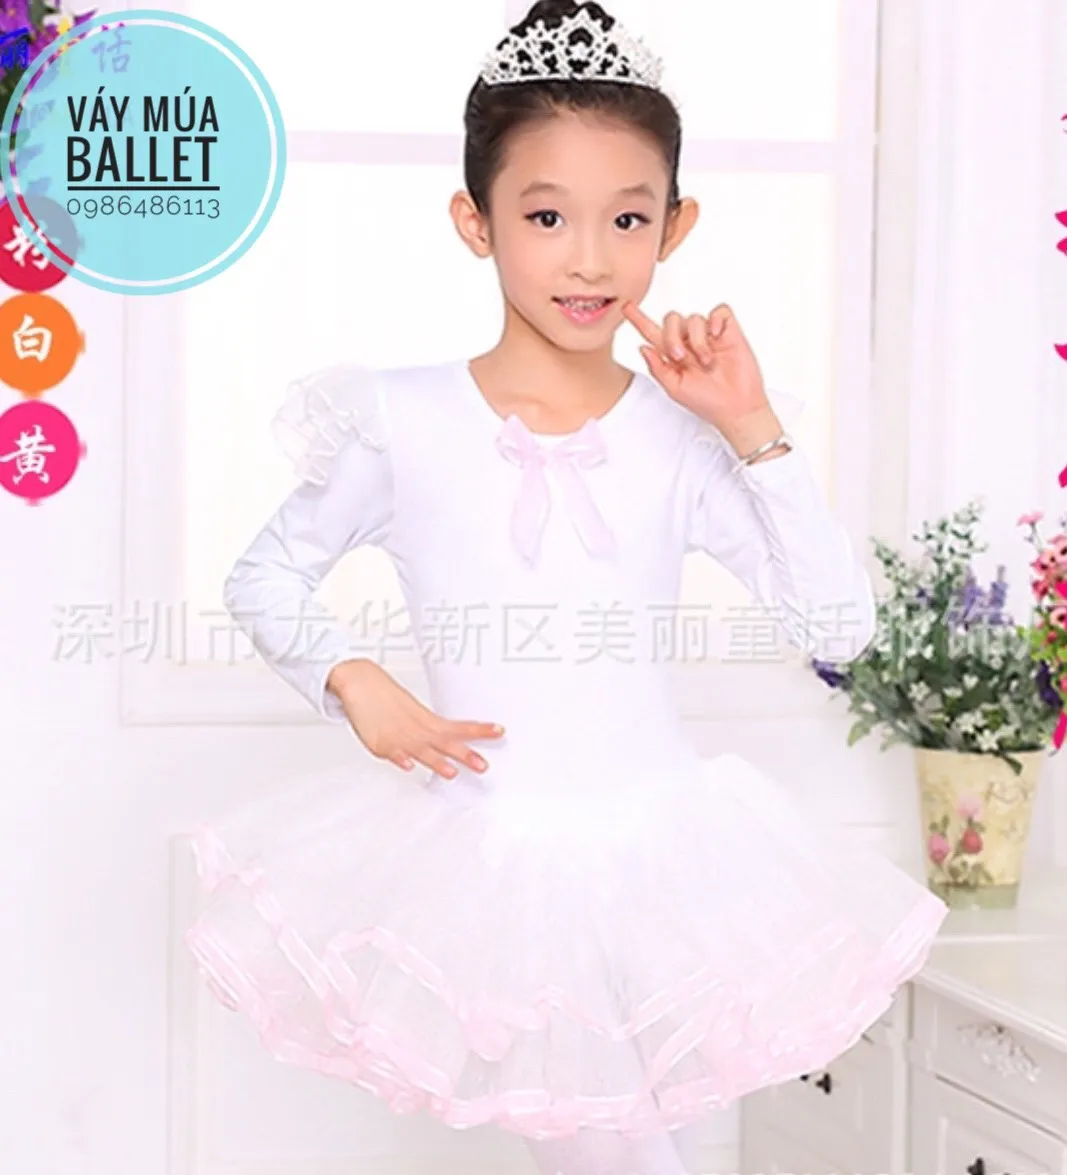 Cho thuê đầm múa trắng trẻ em  Trang phục biểu diễn Sắc Màu Quận 12